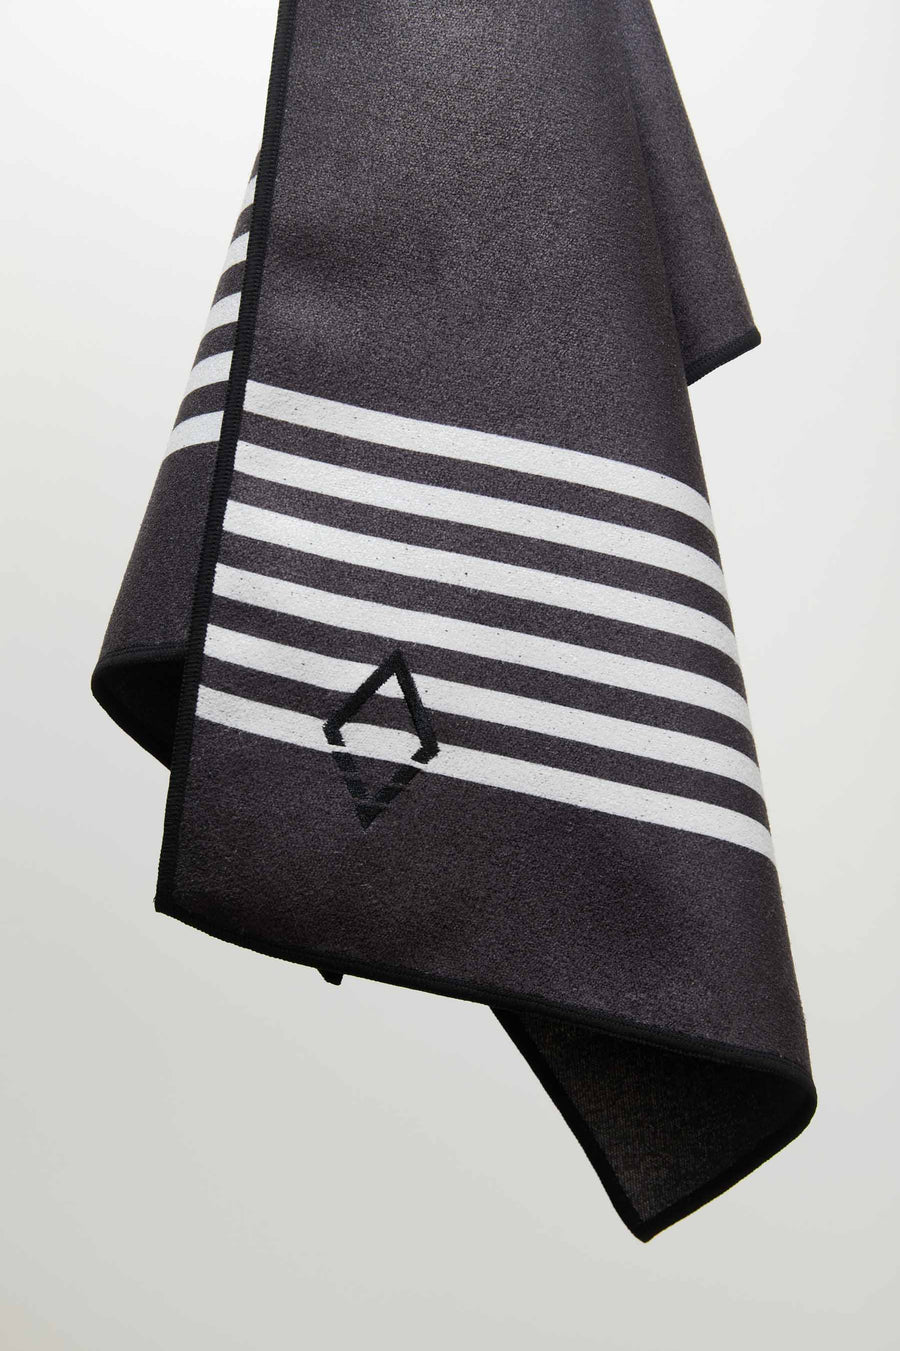 Mini Towel: Poolside Black